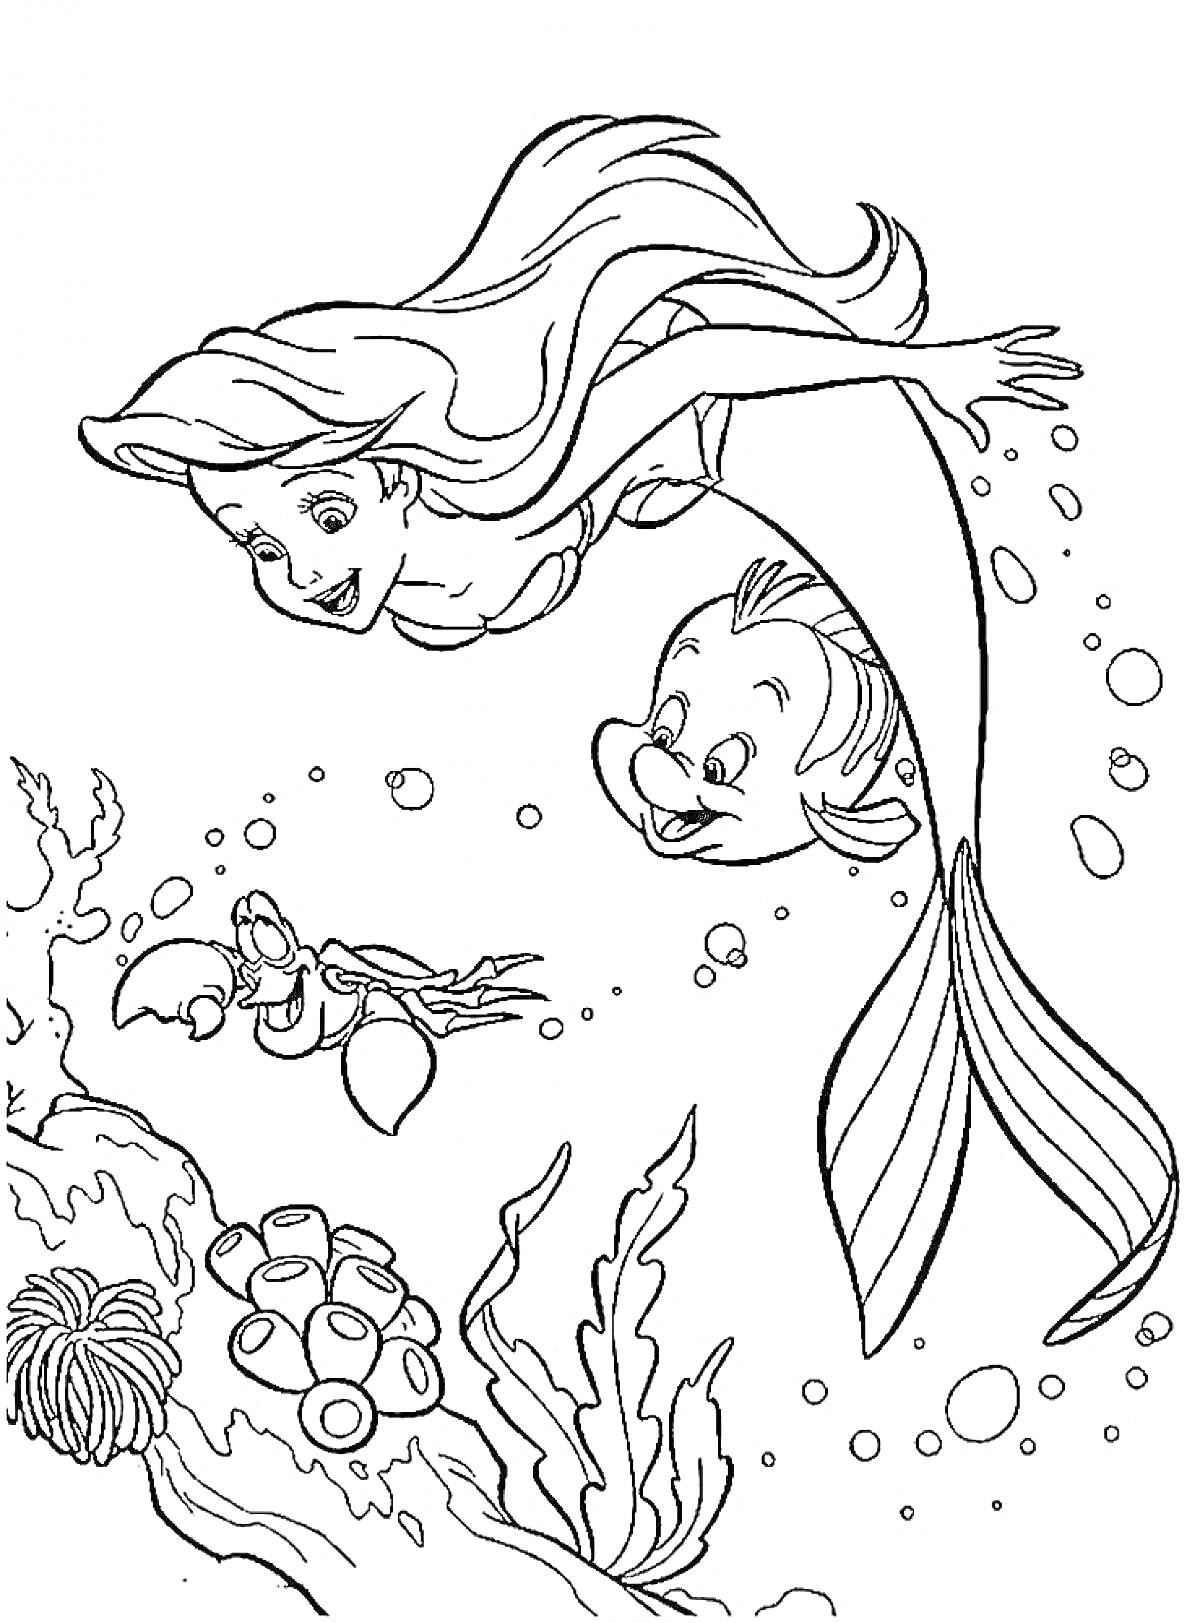 Ариэль русалочка с другом плавником, краб под водой, морские растения и кораллы